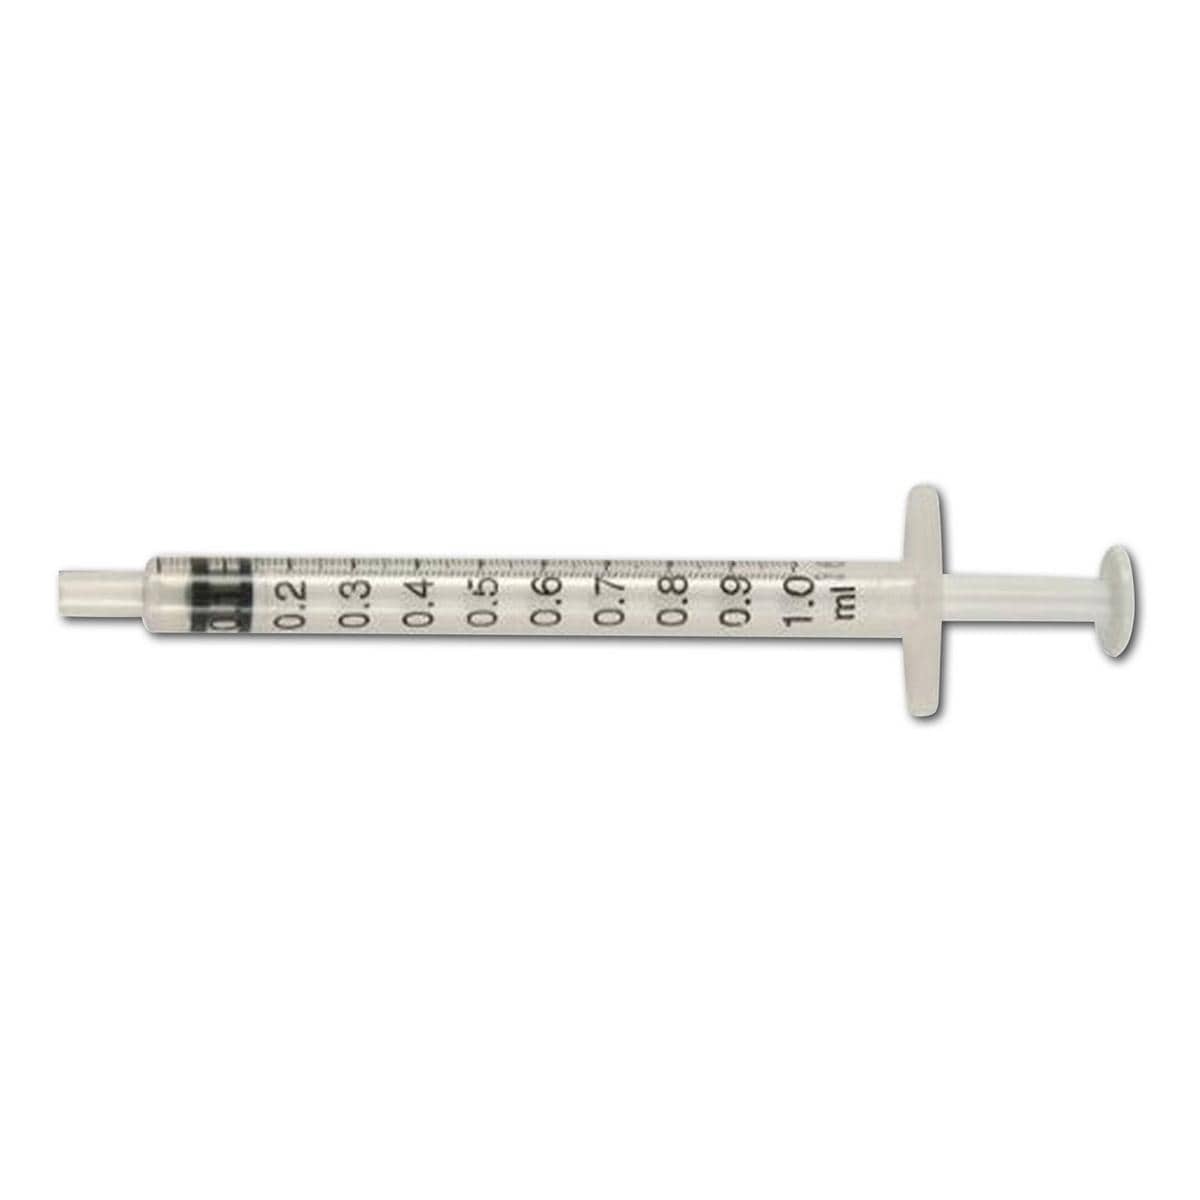 Injectiespuit fijndosering 1 ml - 1 ml, per 100 stuks